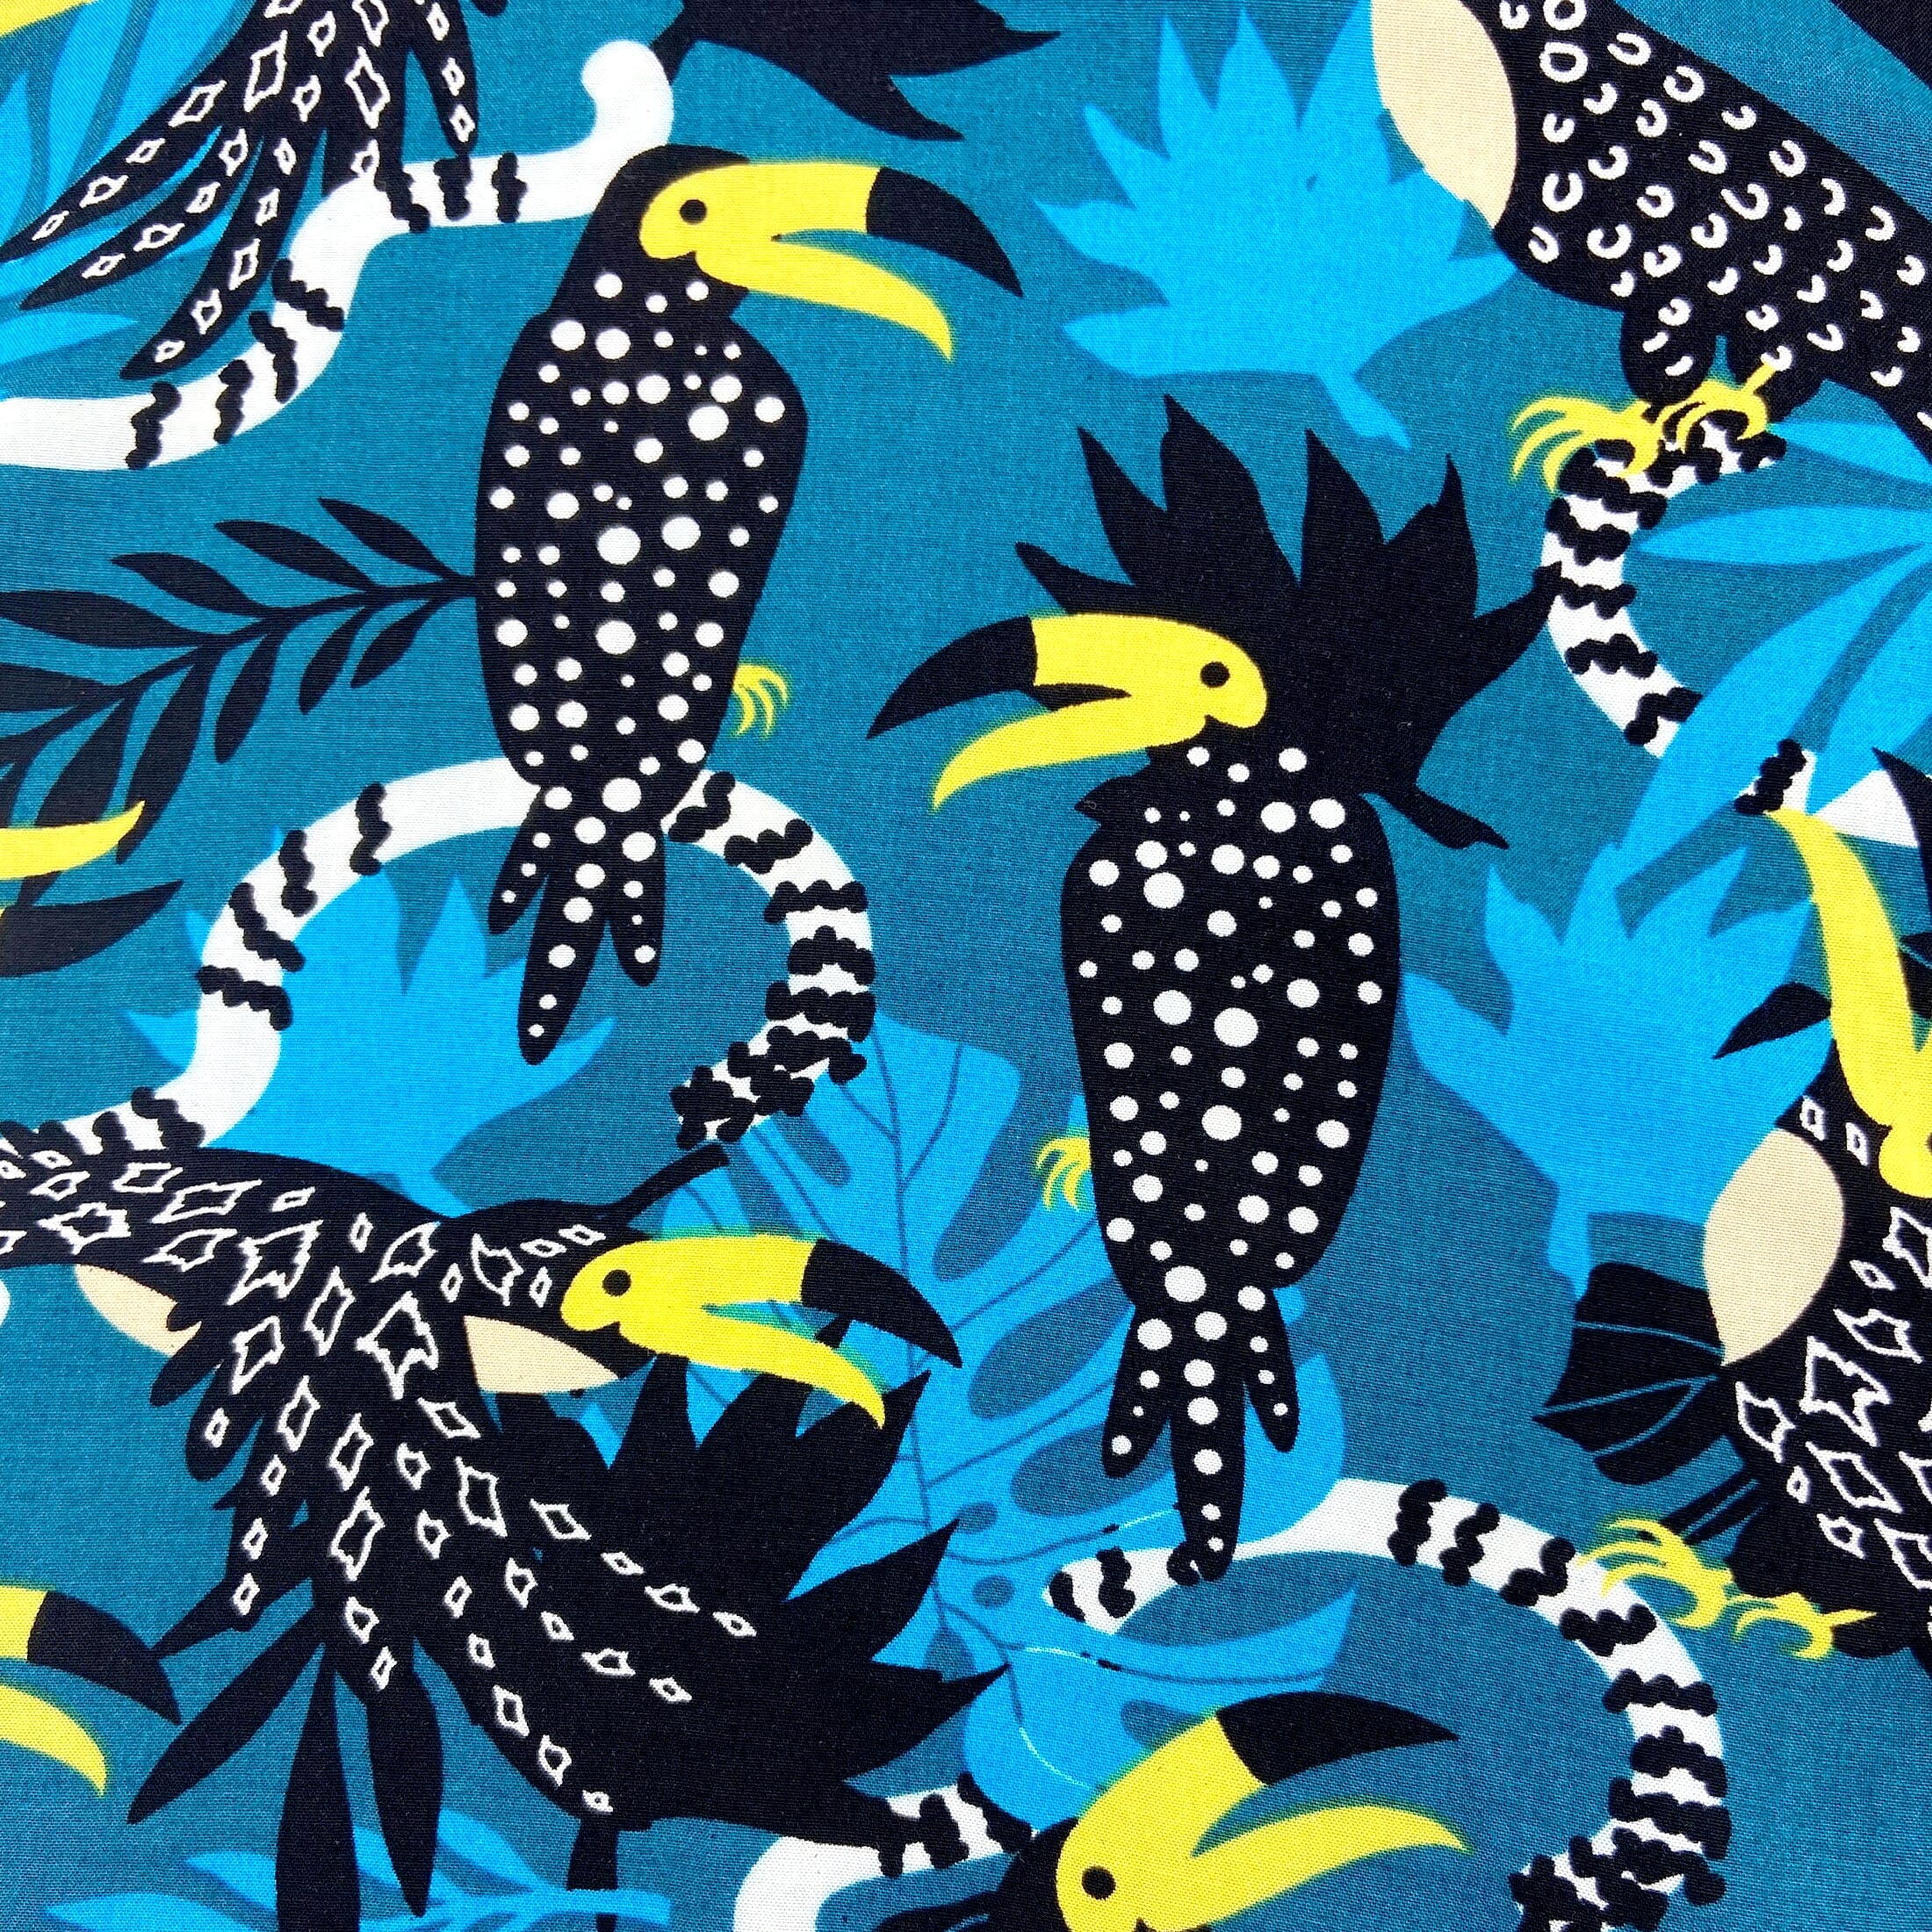 Men's Unique Toucan Bird Floral Leaves Print Button Up Hawaiian Shirt